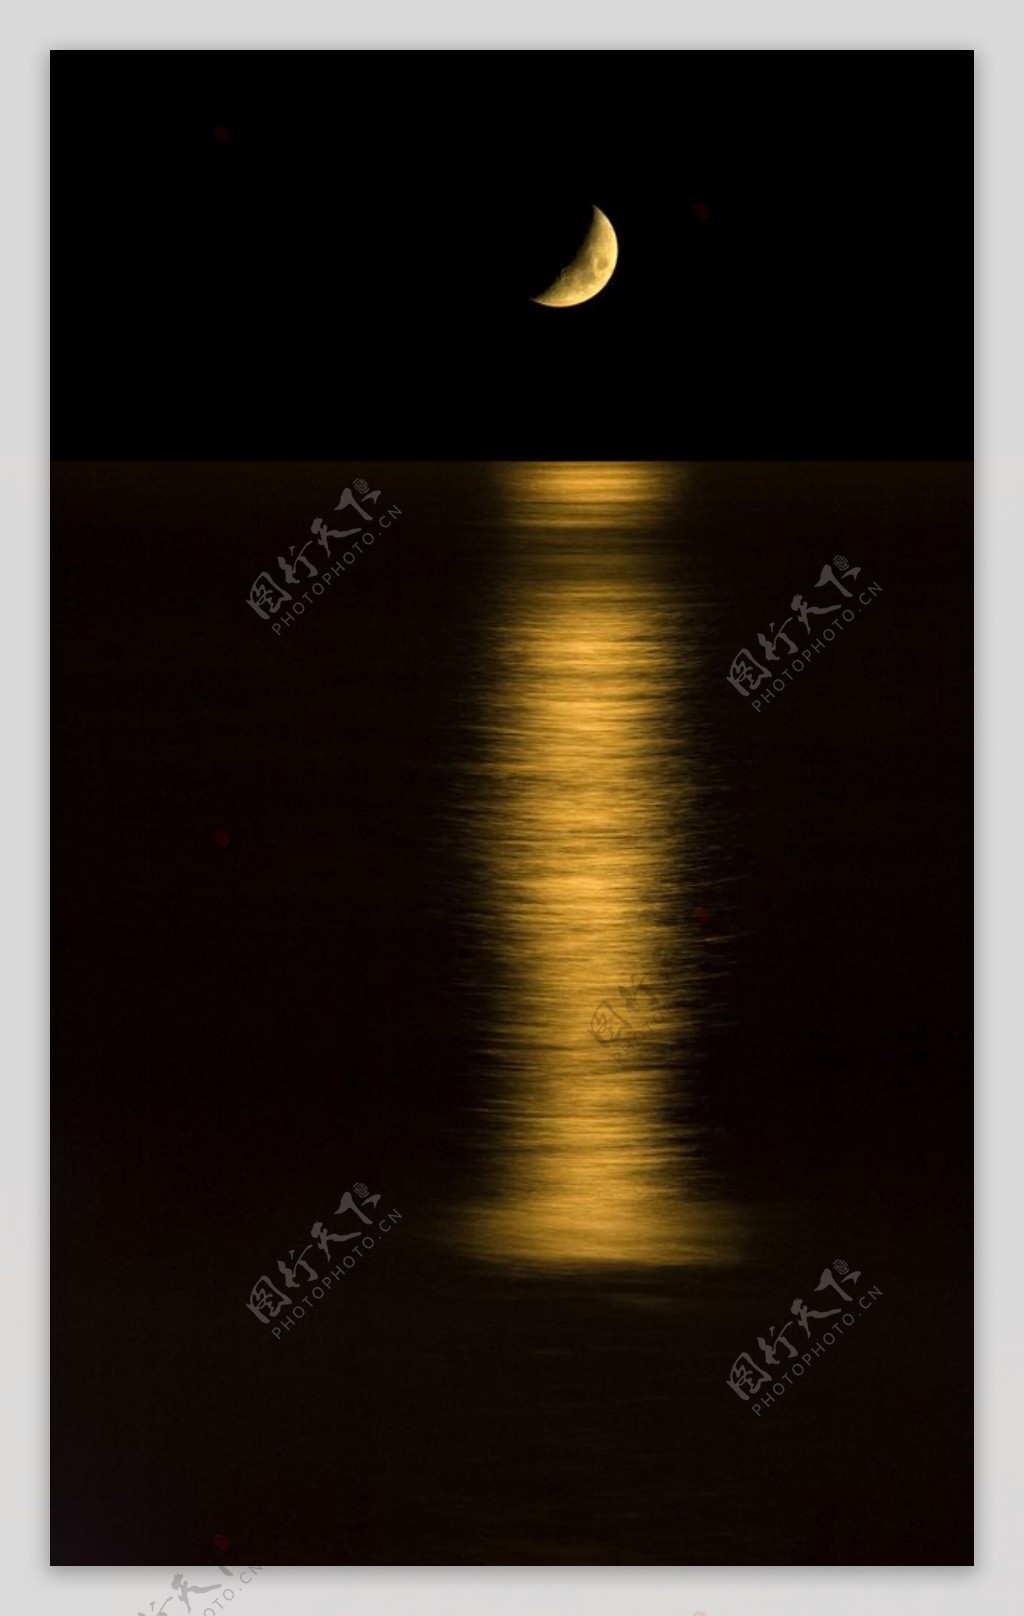 月亮在海面的倒影